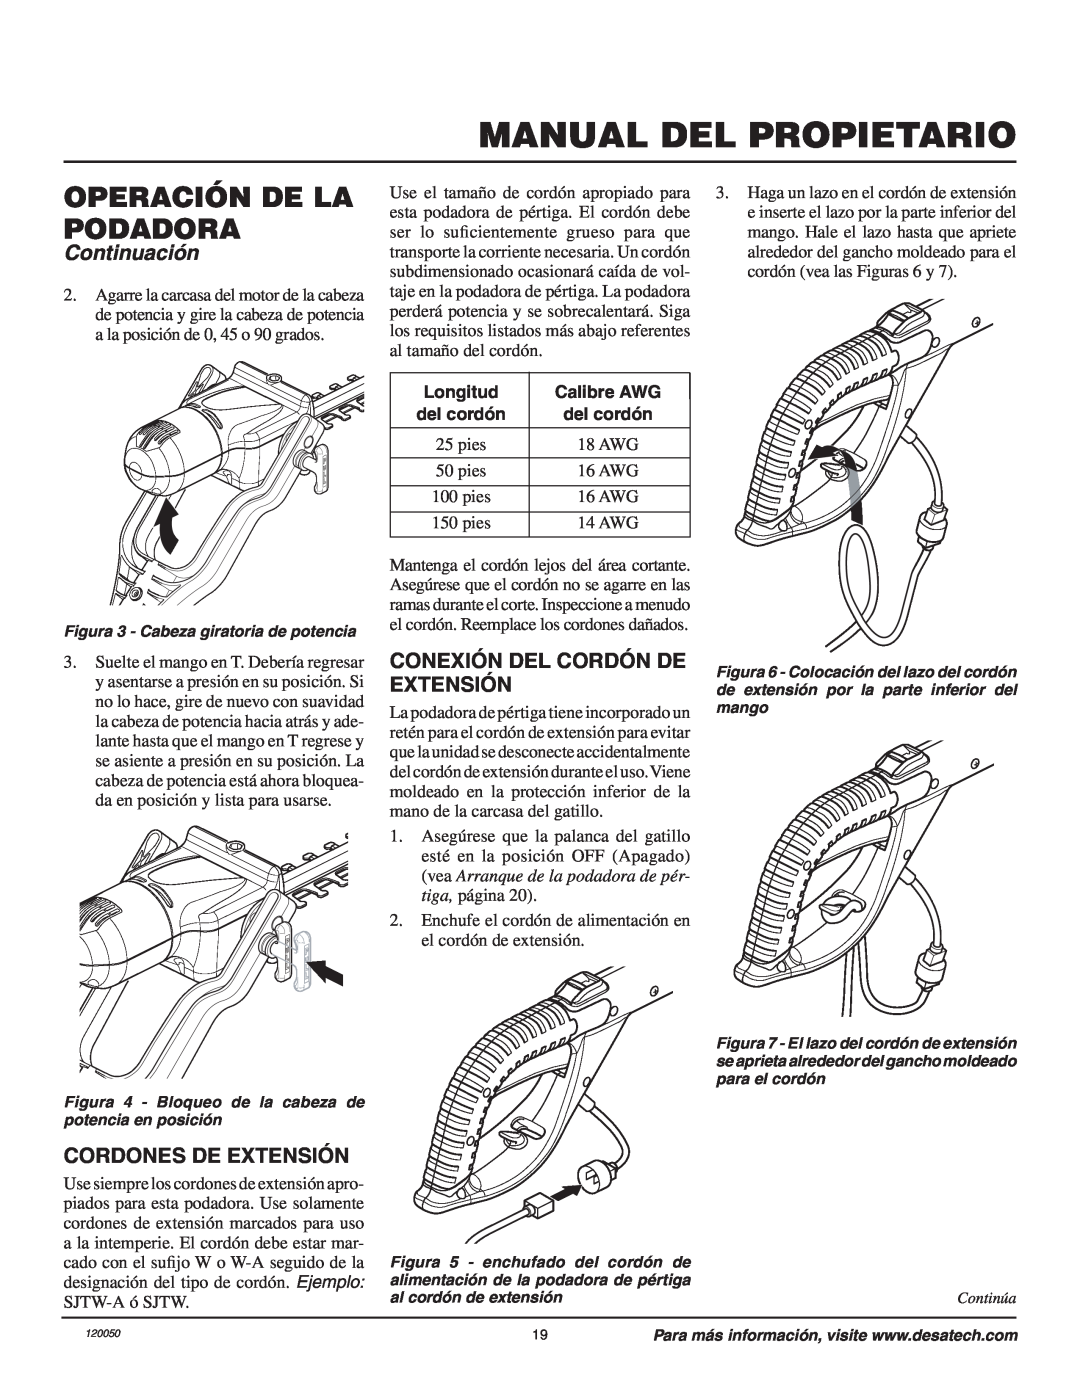 Remington AT3017BCA Manual Del Propietario, Operación De La Podadora, Continuación, Conexión Del Cordón De Extensión 